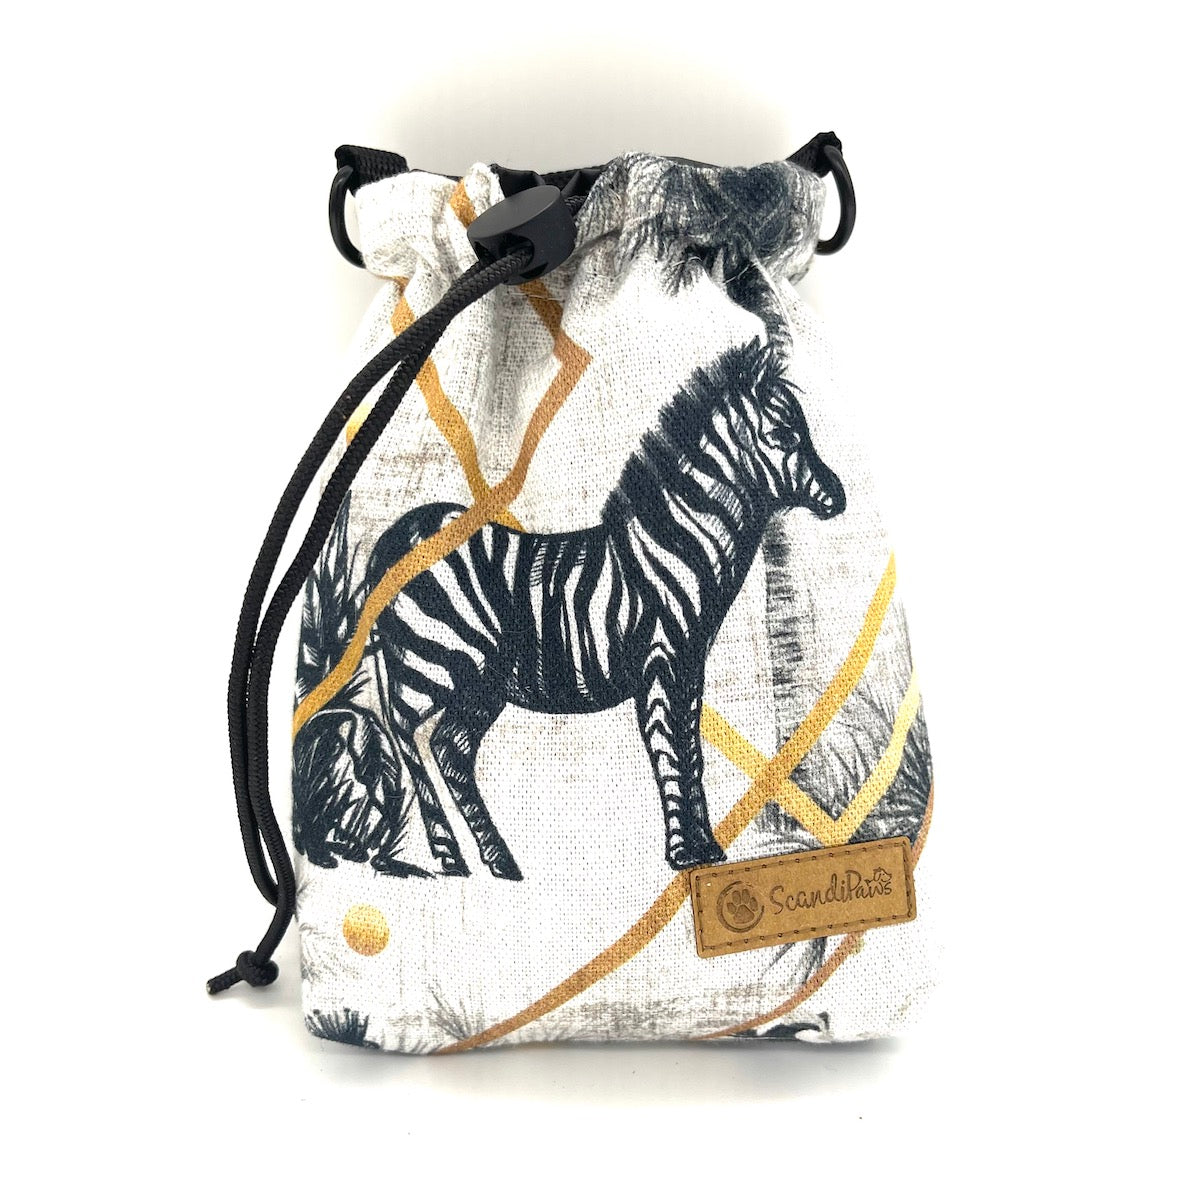 Leckerlibeutel Black Zebra Black Goodiebag mit Hundeleine von ScandiPaws